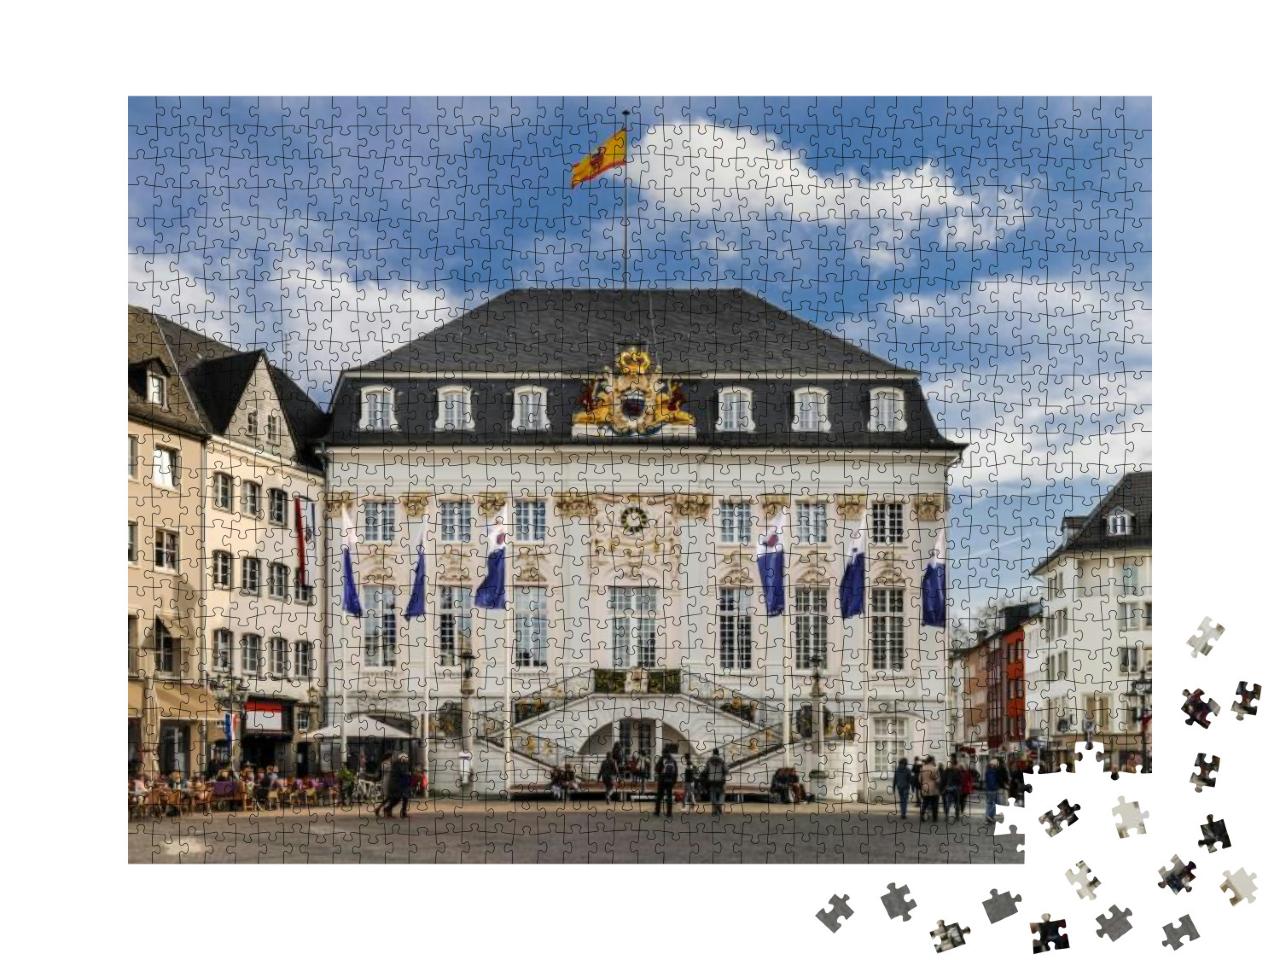 Puzzle 1000 Teile „Das Alte Rathaus vom zentralen Marktplatz in Bonn aus gesehen“